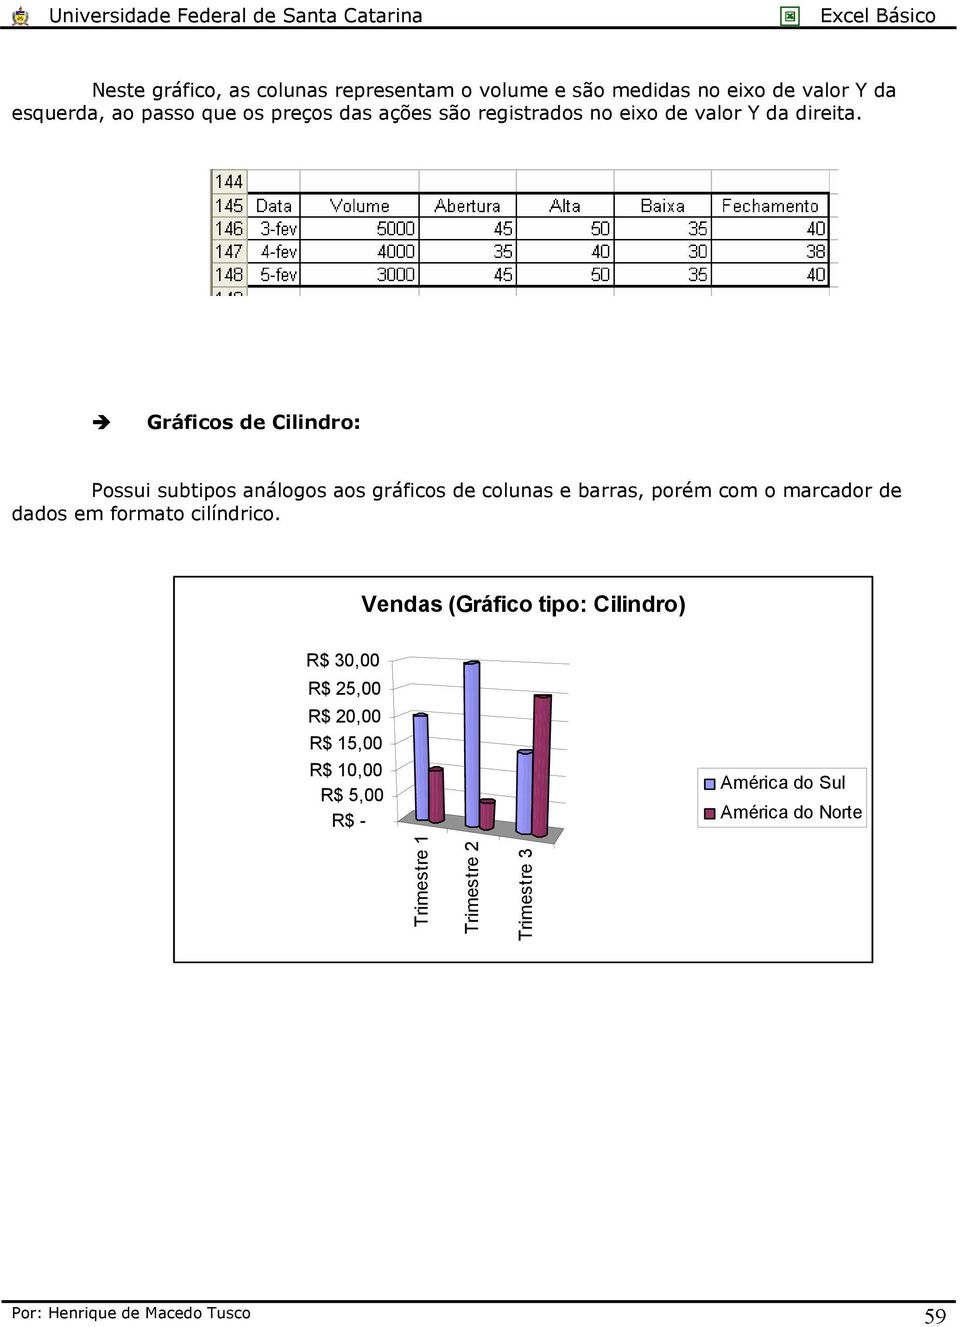 Gráficos de Cilindro: Possui subtipos análogos aos gráficos de colunas e barras, porém com o marcador de dados em formato